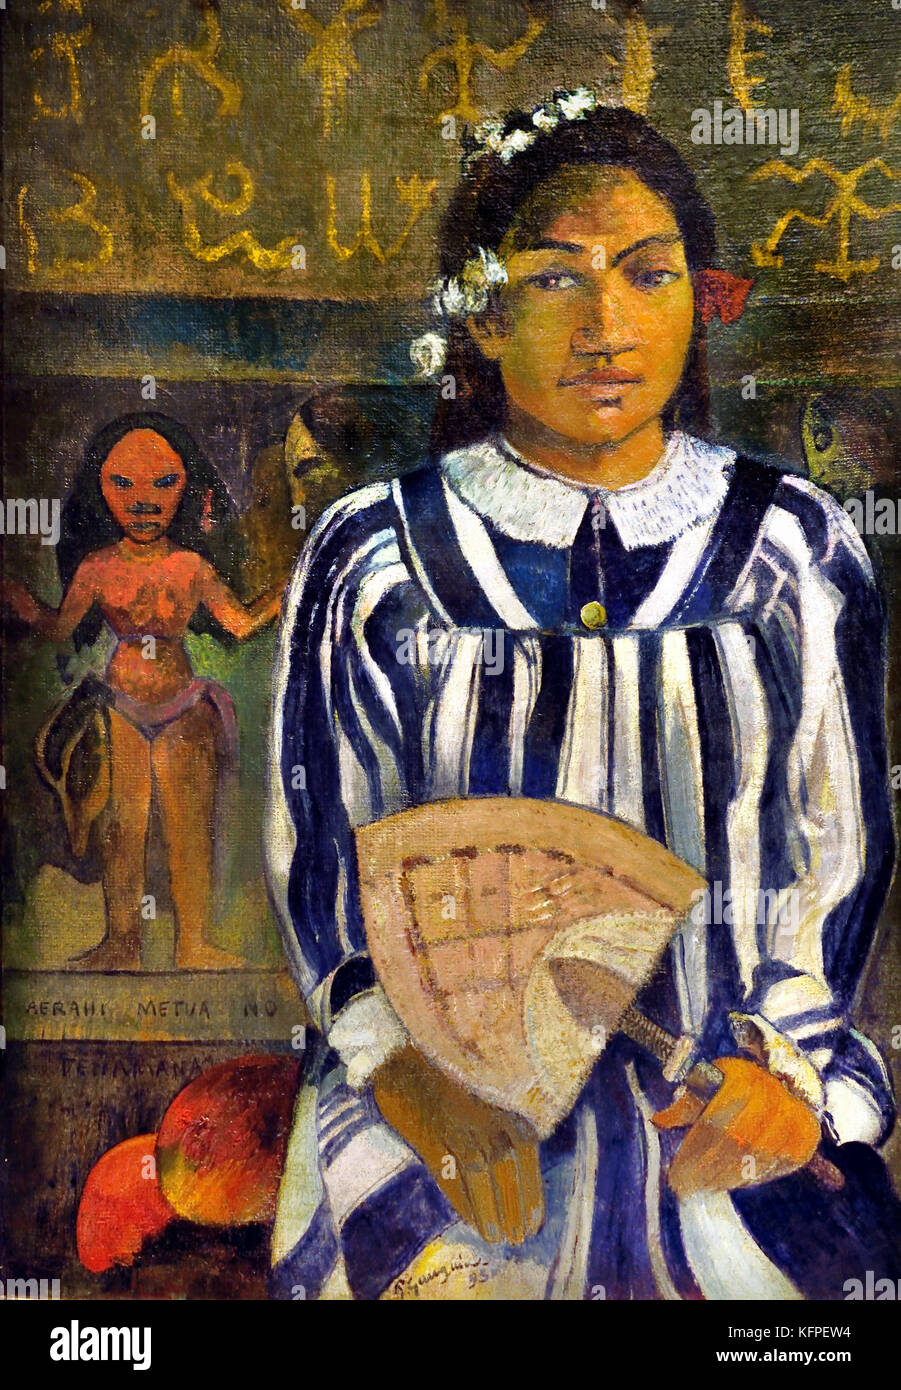 Merahi Metua - Pas Tehamana 1893 Paul Gauguin - Eugène Henri Paul Gauguin 1848 - 1903 était un artiste post-impressionniste français, France. 8, 1903 ( décédé peut, Atuona, Marquises, Polynésie française ) Peintre, sculpteur. Banque D'Images